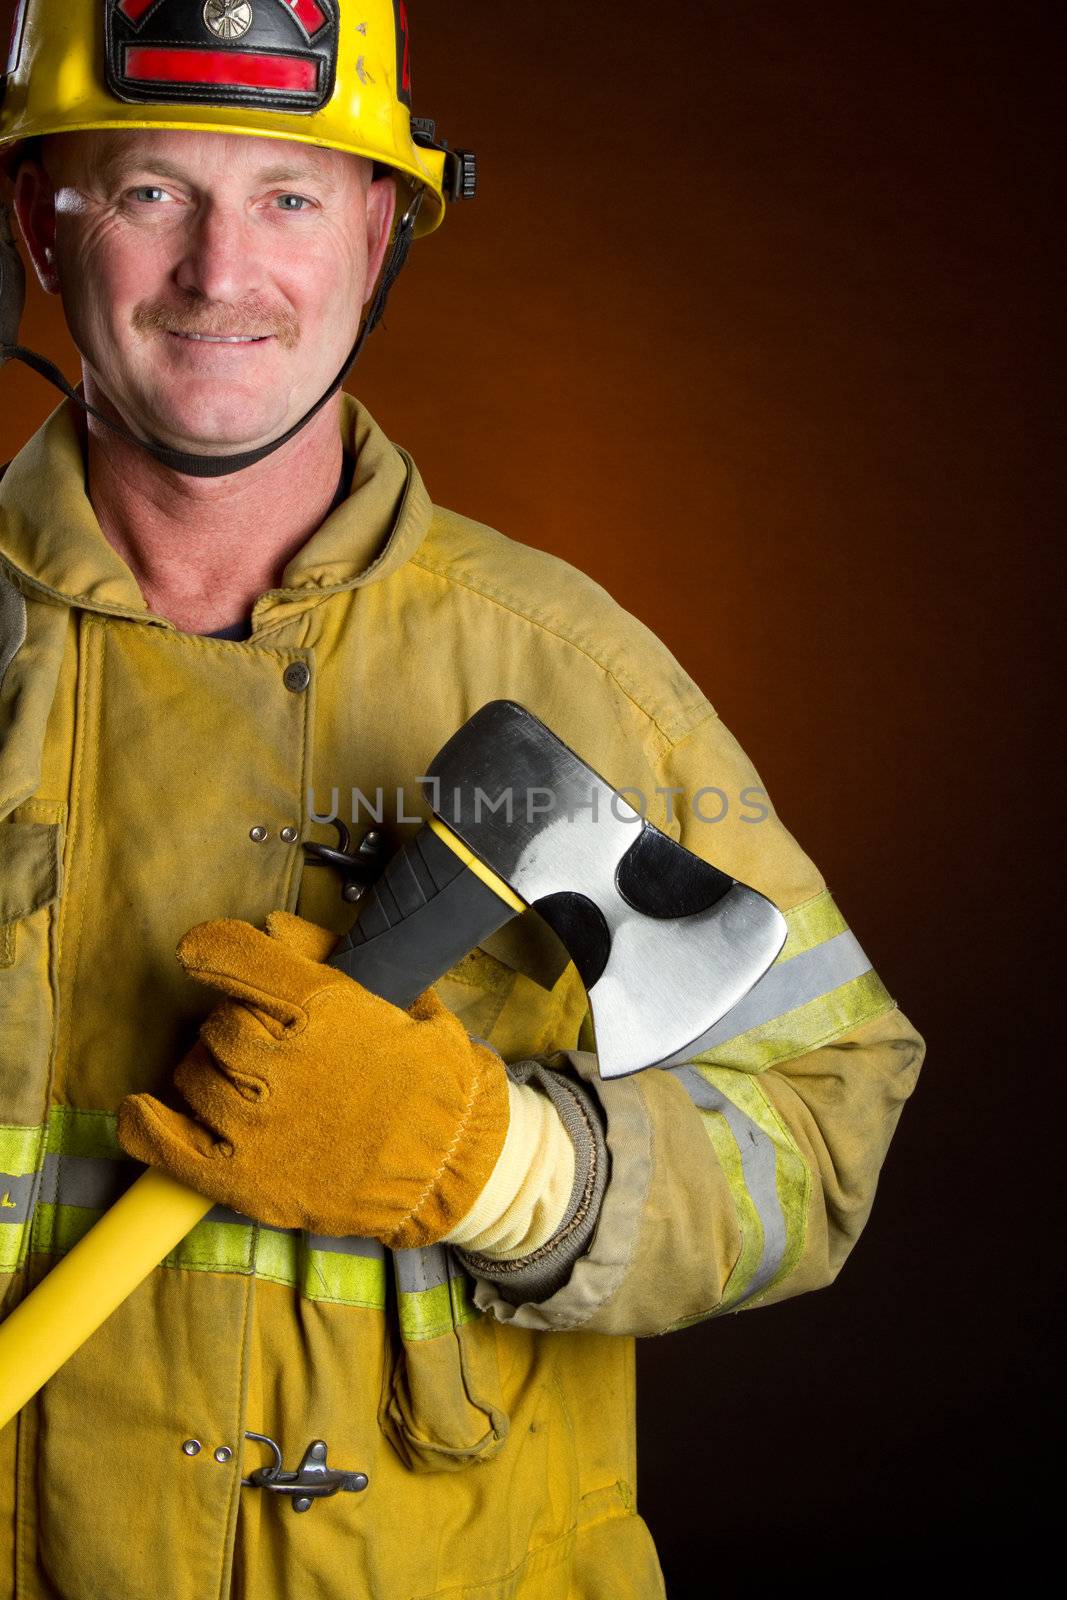 Smiling firefighter holding axe